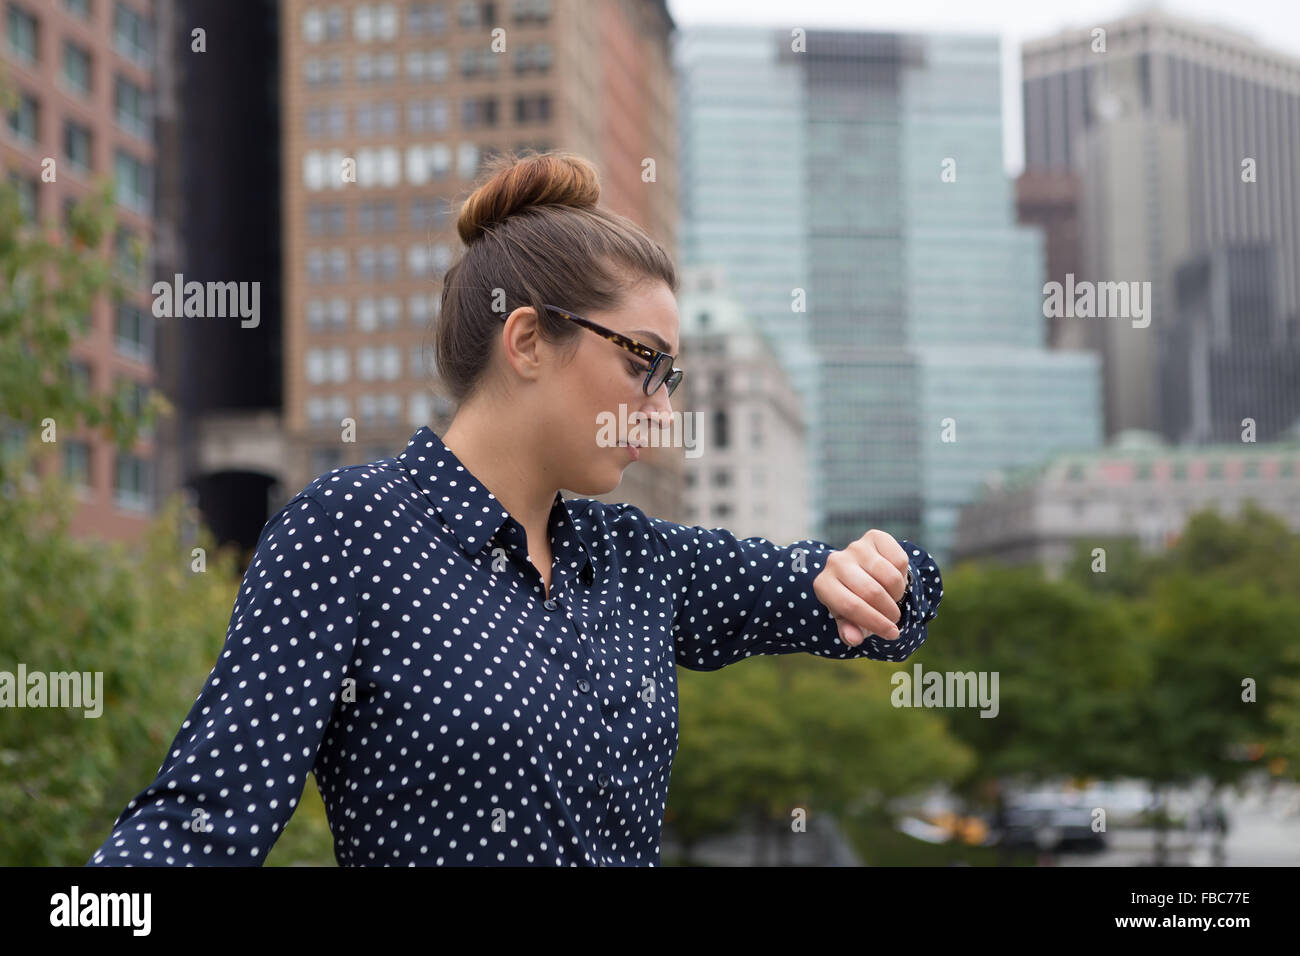 Jeune professionnel femme dans la ville. Photographié dans la ville de New York en octobre 2015. Banque D'Images